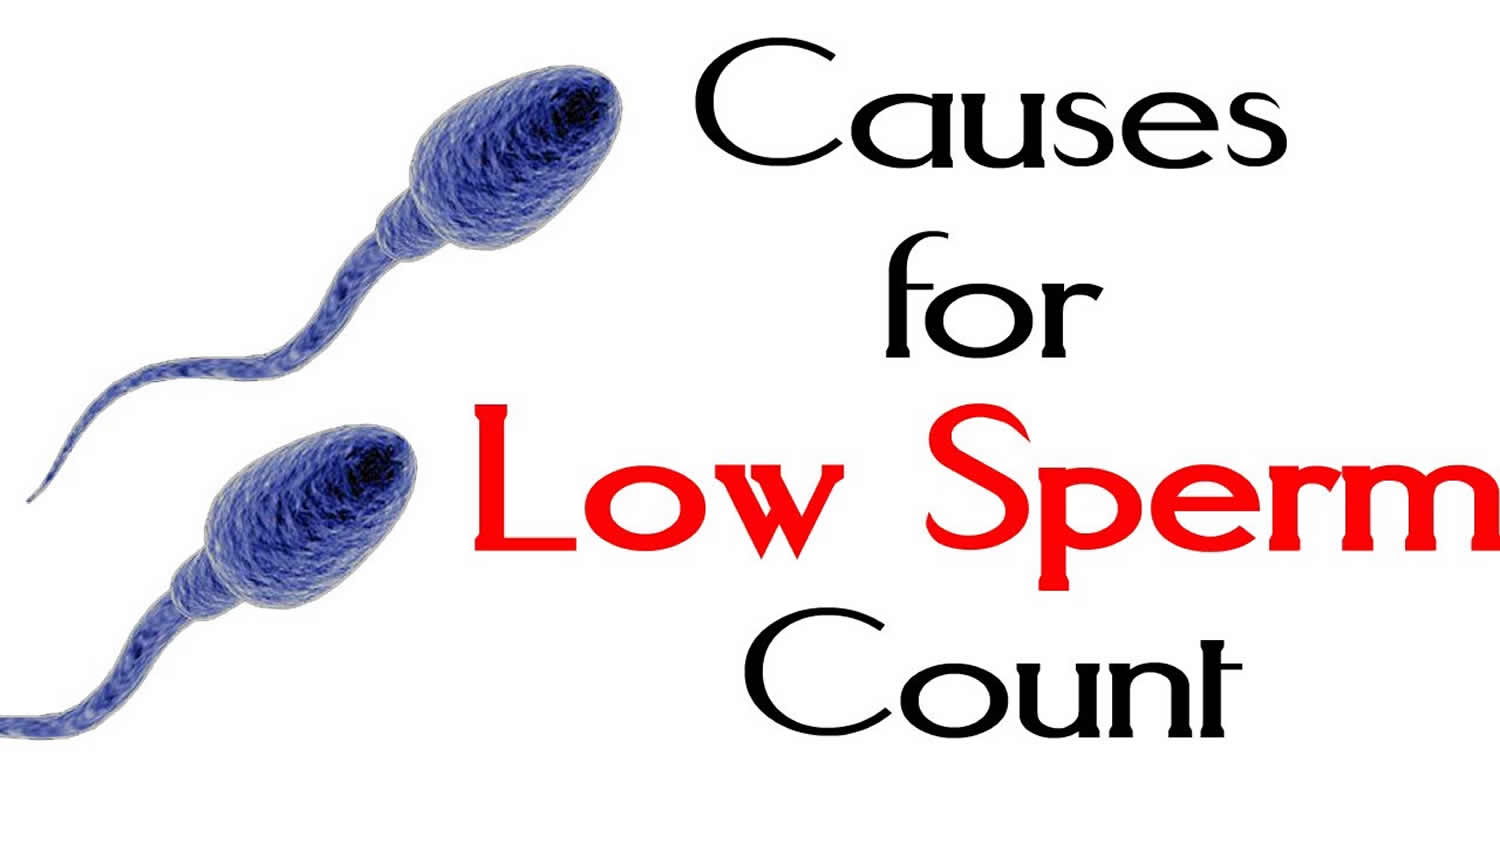 Low Sperm Count - Causes, Signs, Symptoms, Diagnosis & Treatment